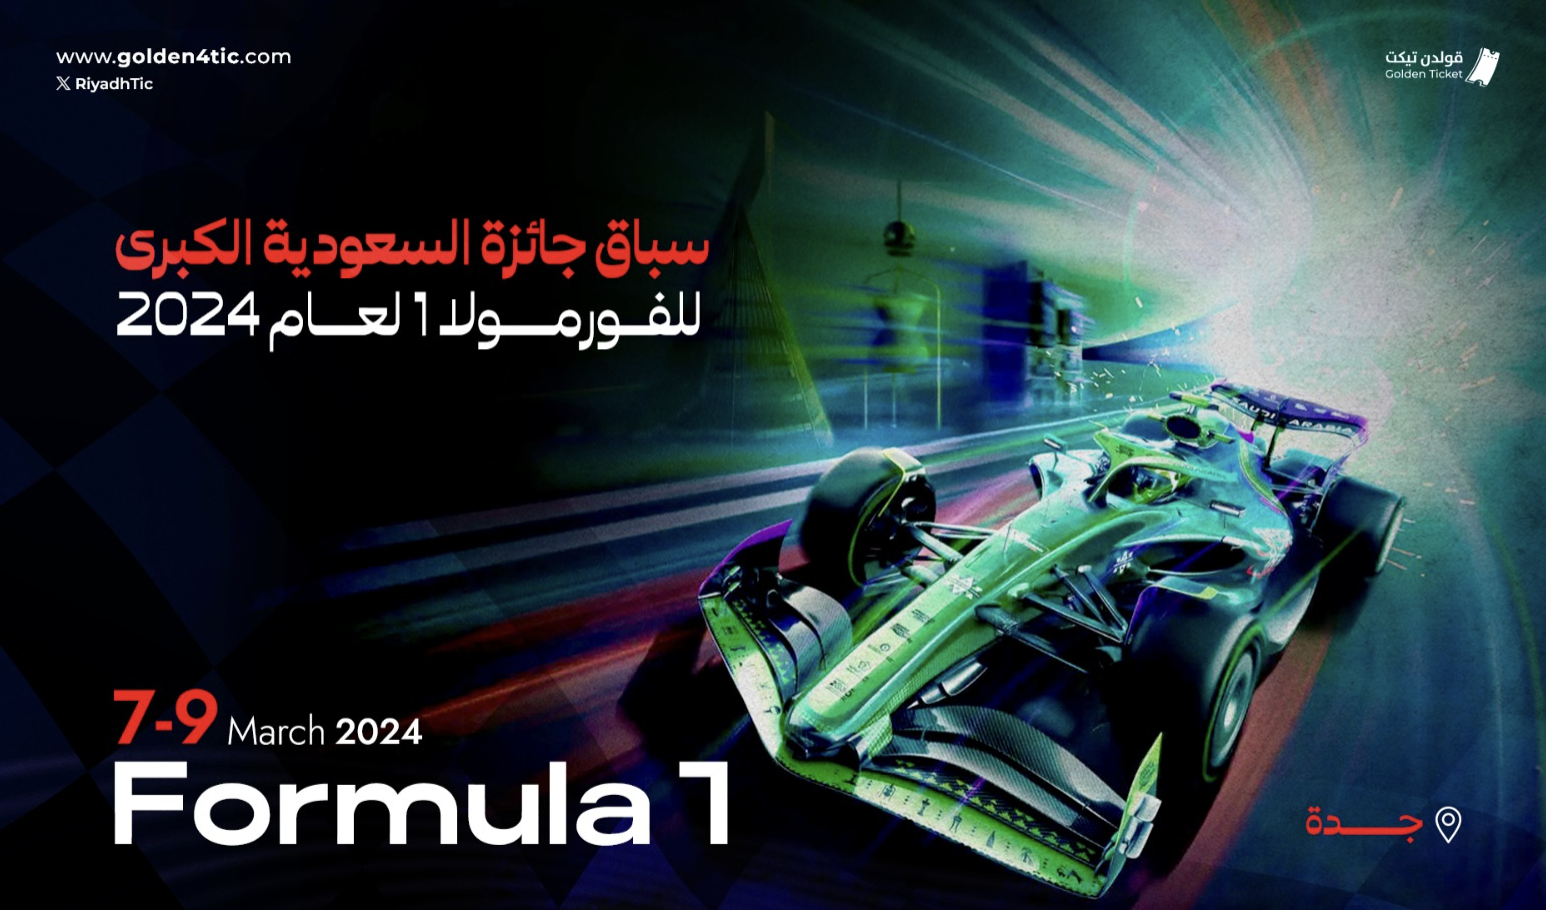 سباق جائزة السعودية الكبرى فورمولا 1 لعام 2024 يوم الخميس